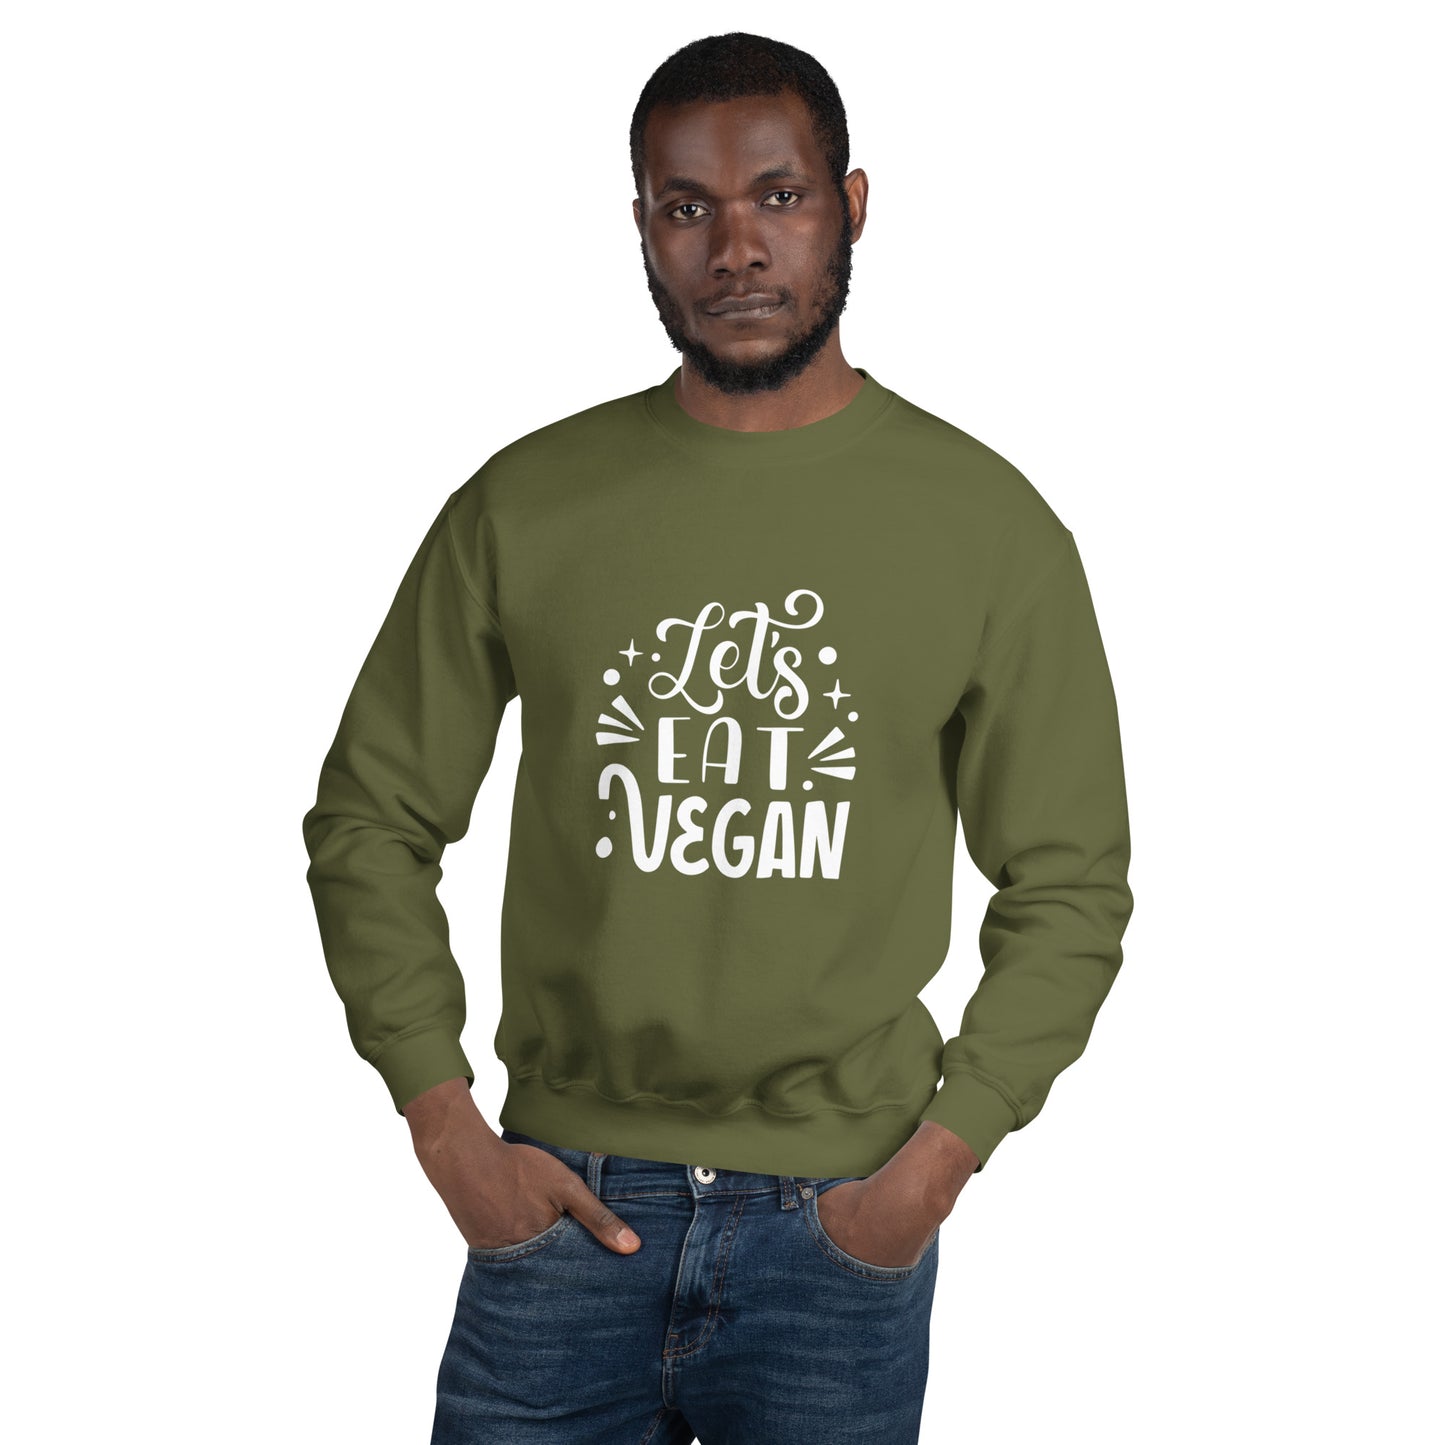 Let's Eat Vegan - Sweatshirt